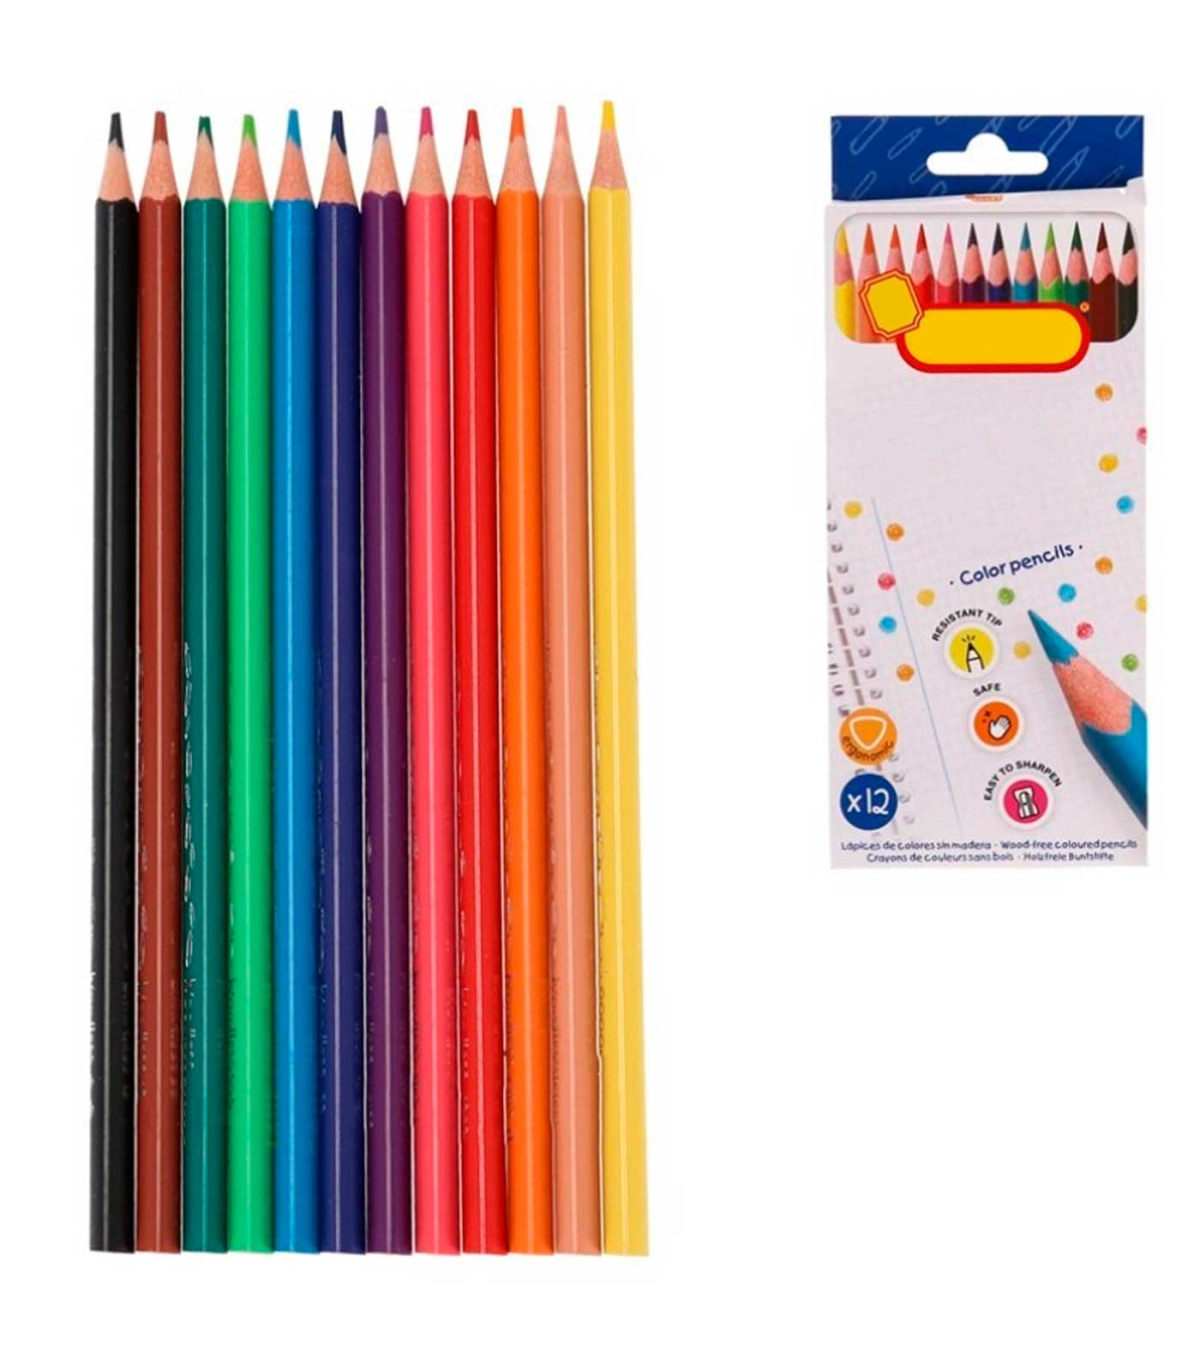 https://tradineur.com/101017-superlarge_default/tradineur--caja-de-12-lapices-de-colores-para-ninos-material-escolar-colores-vivos-surtidos-ideal-para-colorear-y-dibujar.jpg